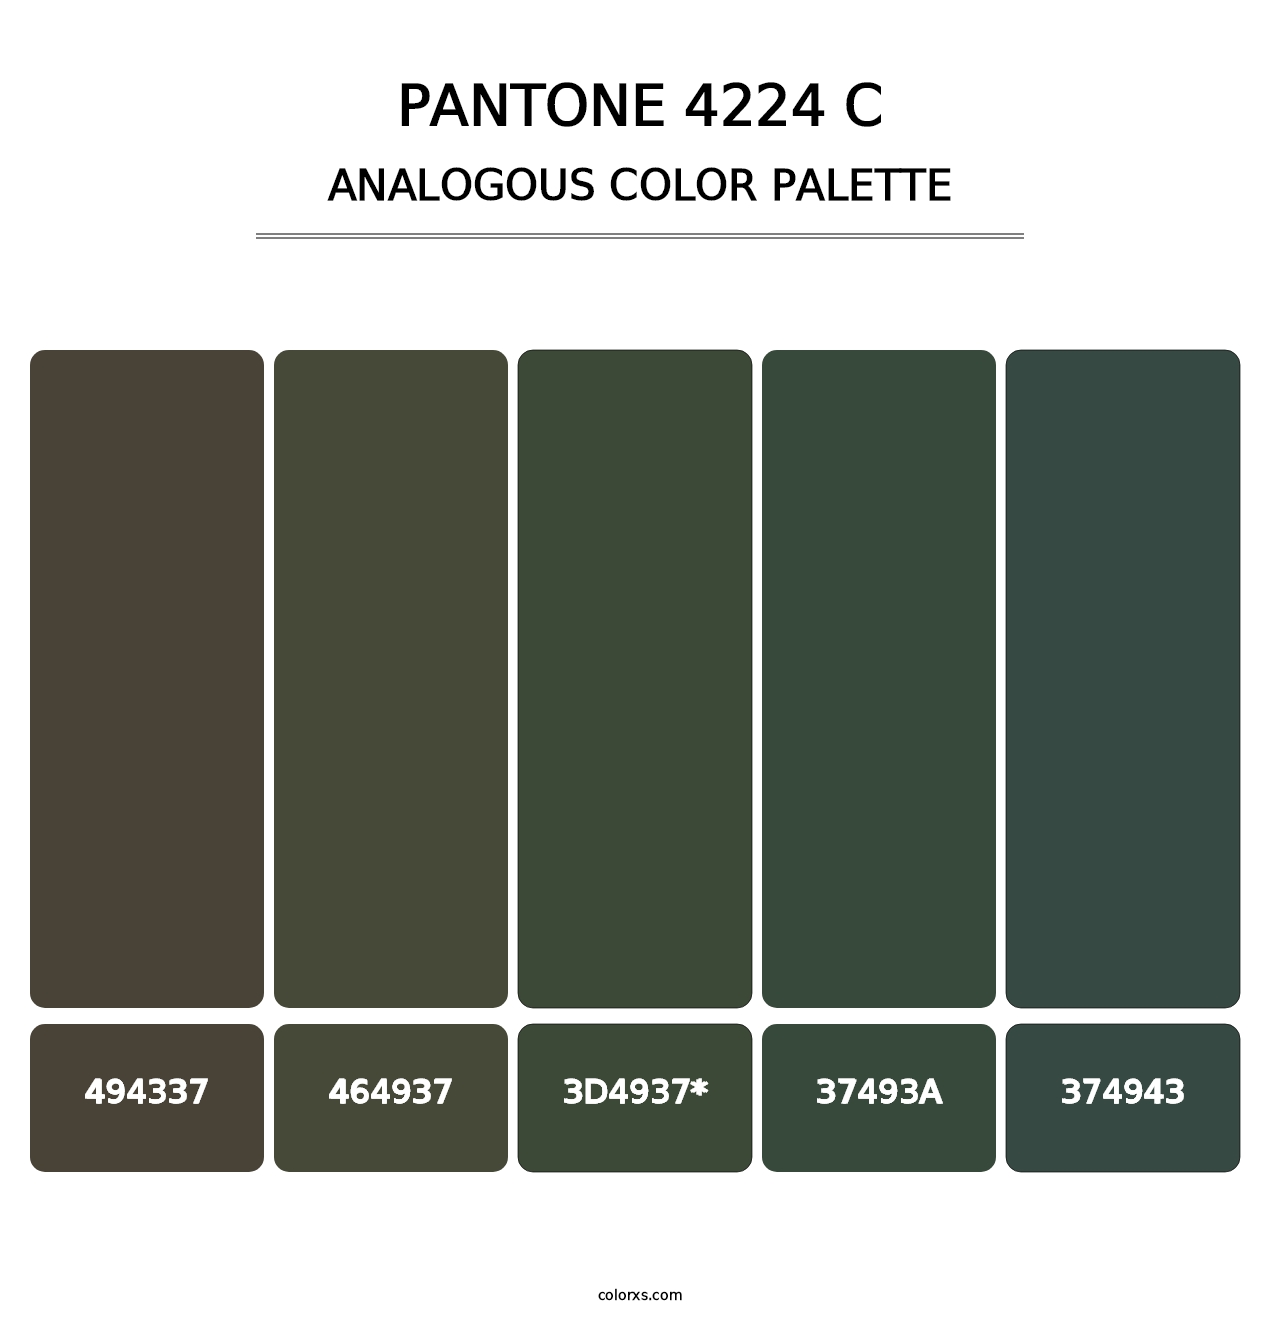 PANTONE 4224 C - Analogous Color Palette